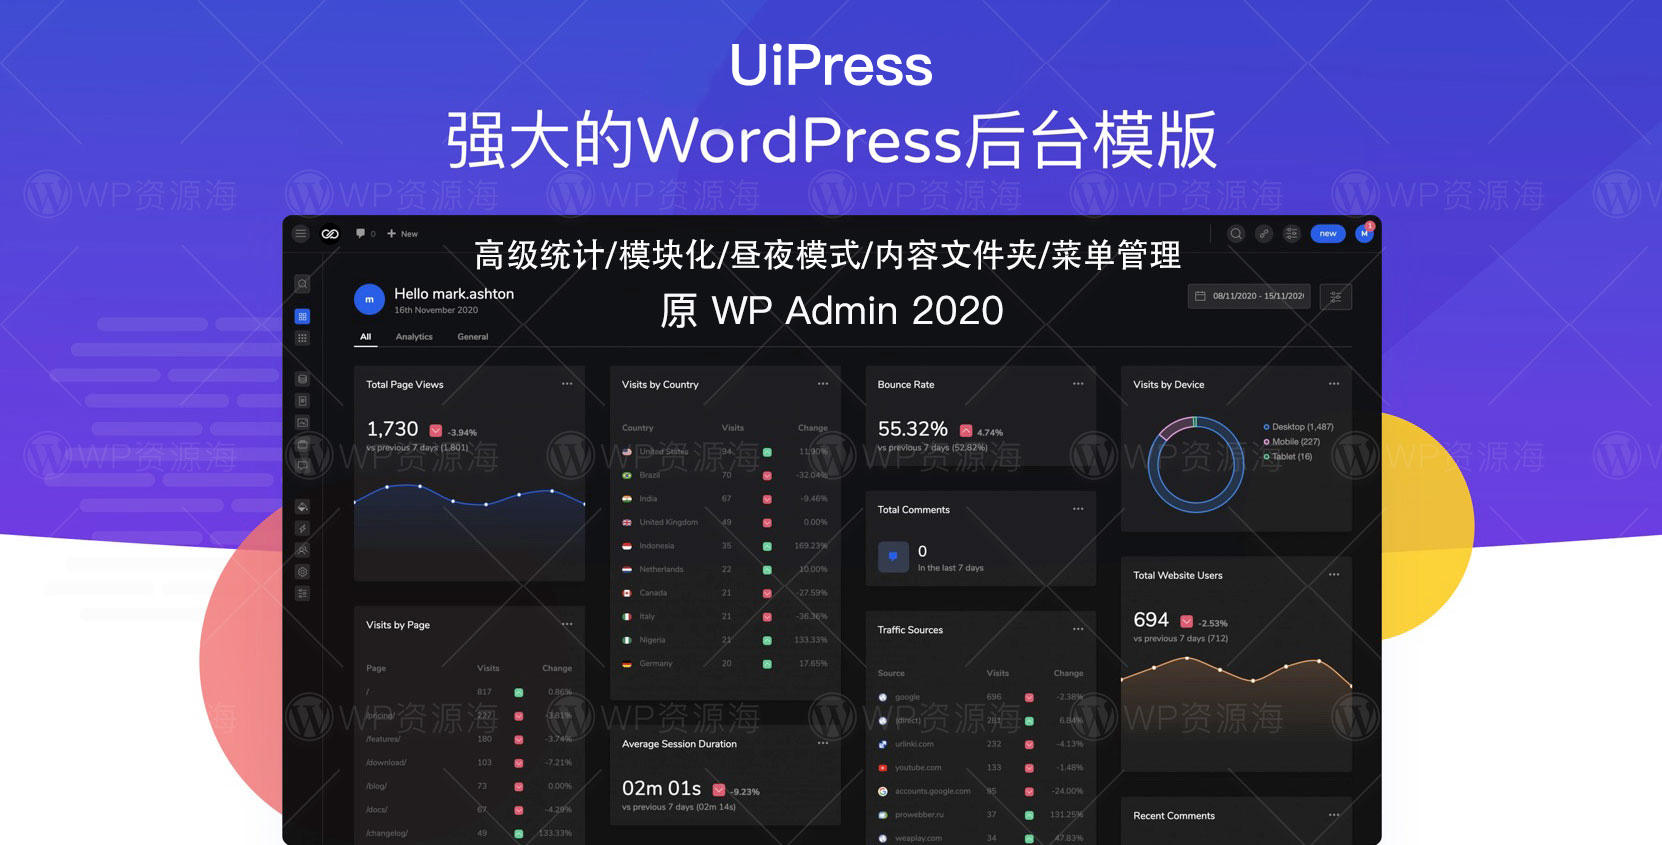 【众筹】UiPress官方正版授权团购 终身无限站点授权